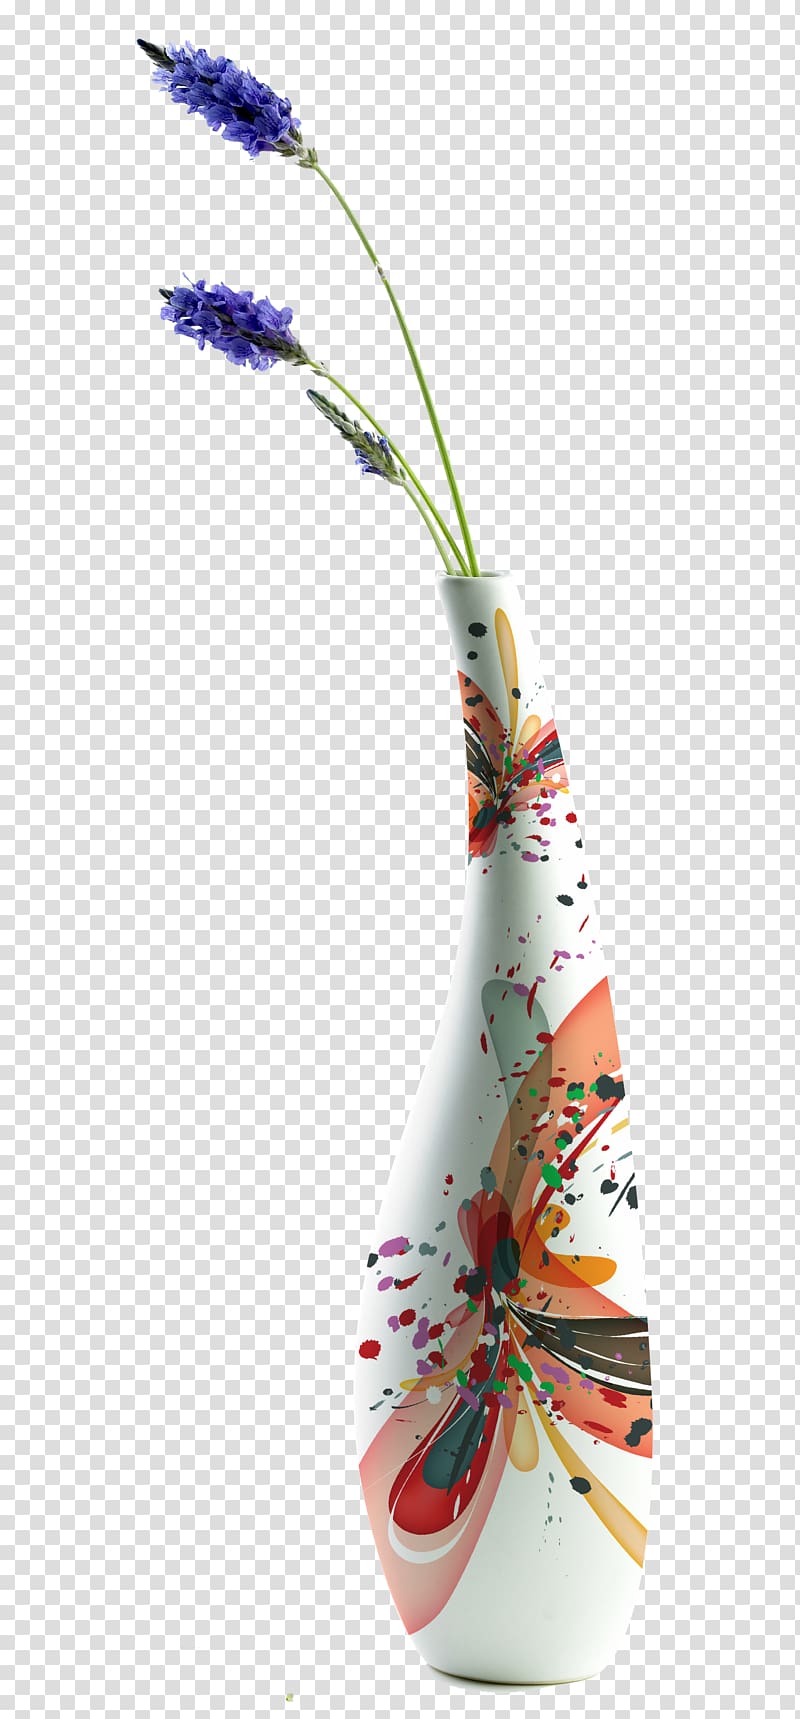 Book design , vase transparent background PNG clipart